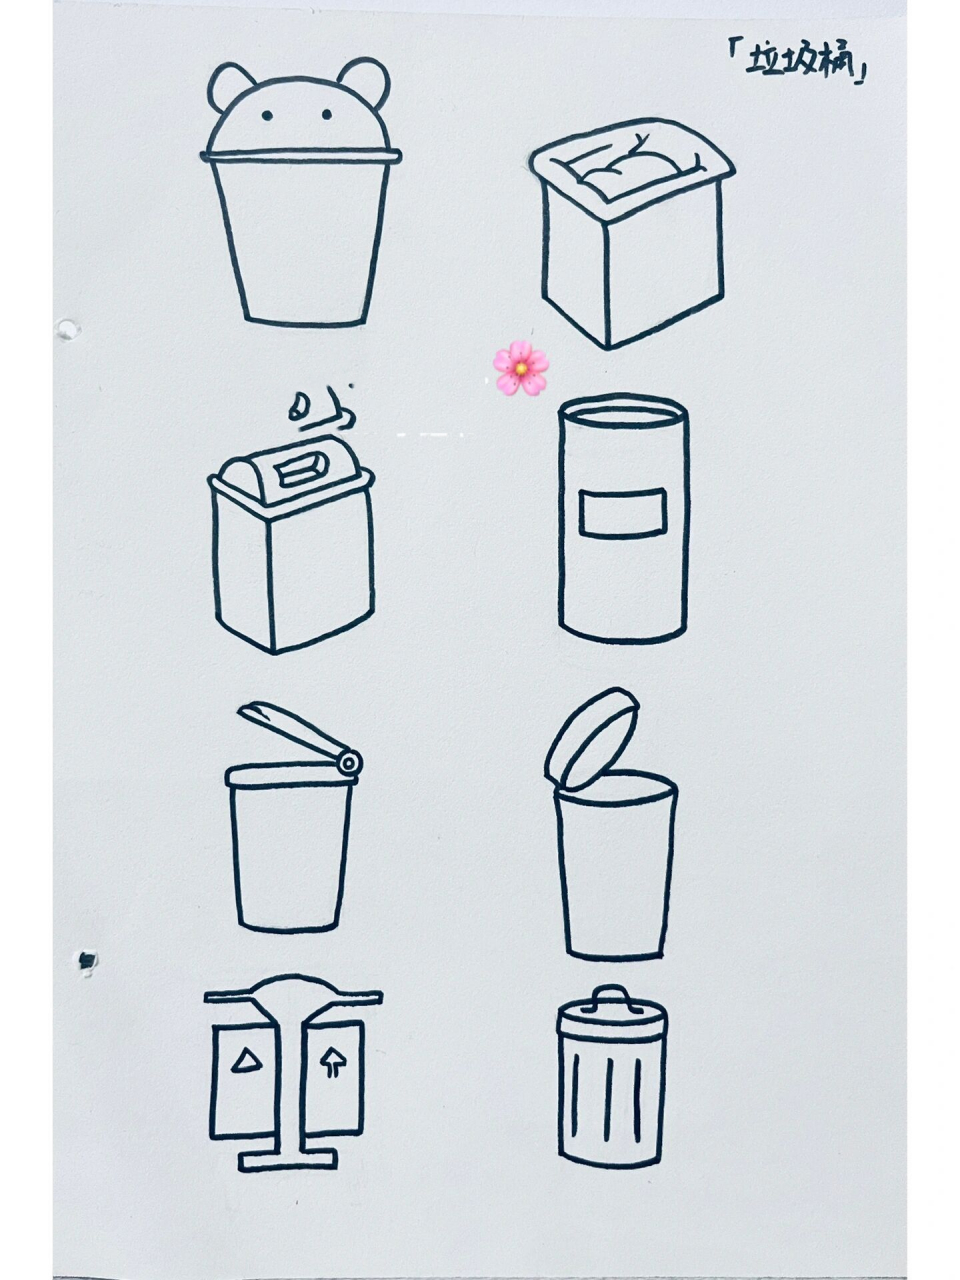 分类垃圾桶怎么画简笔图片